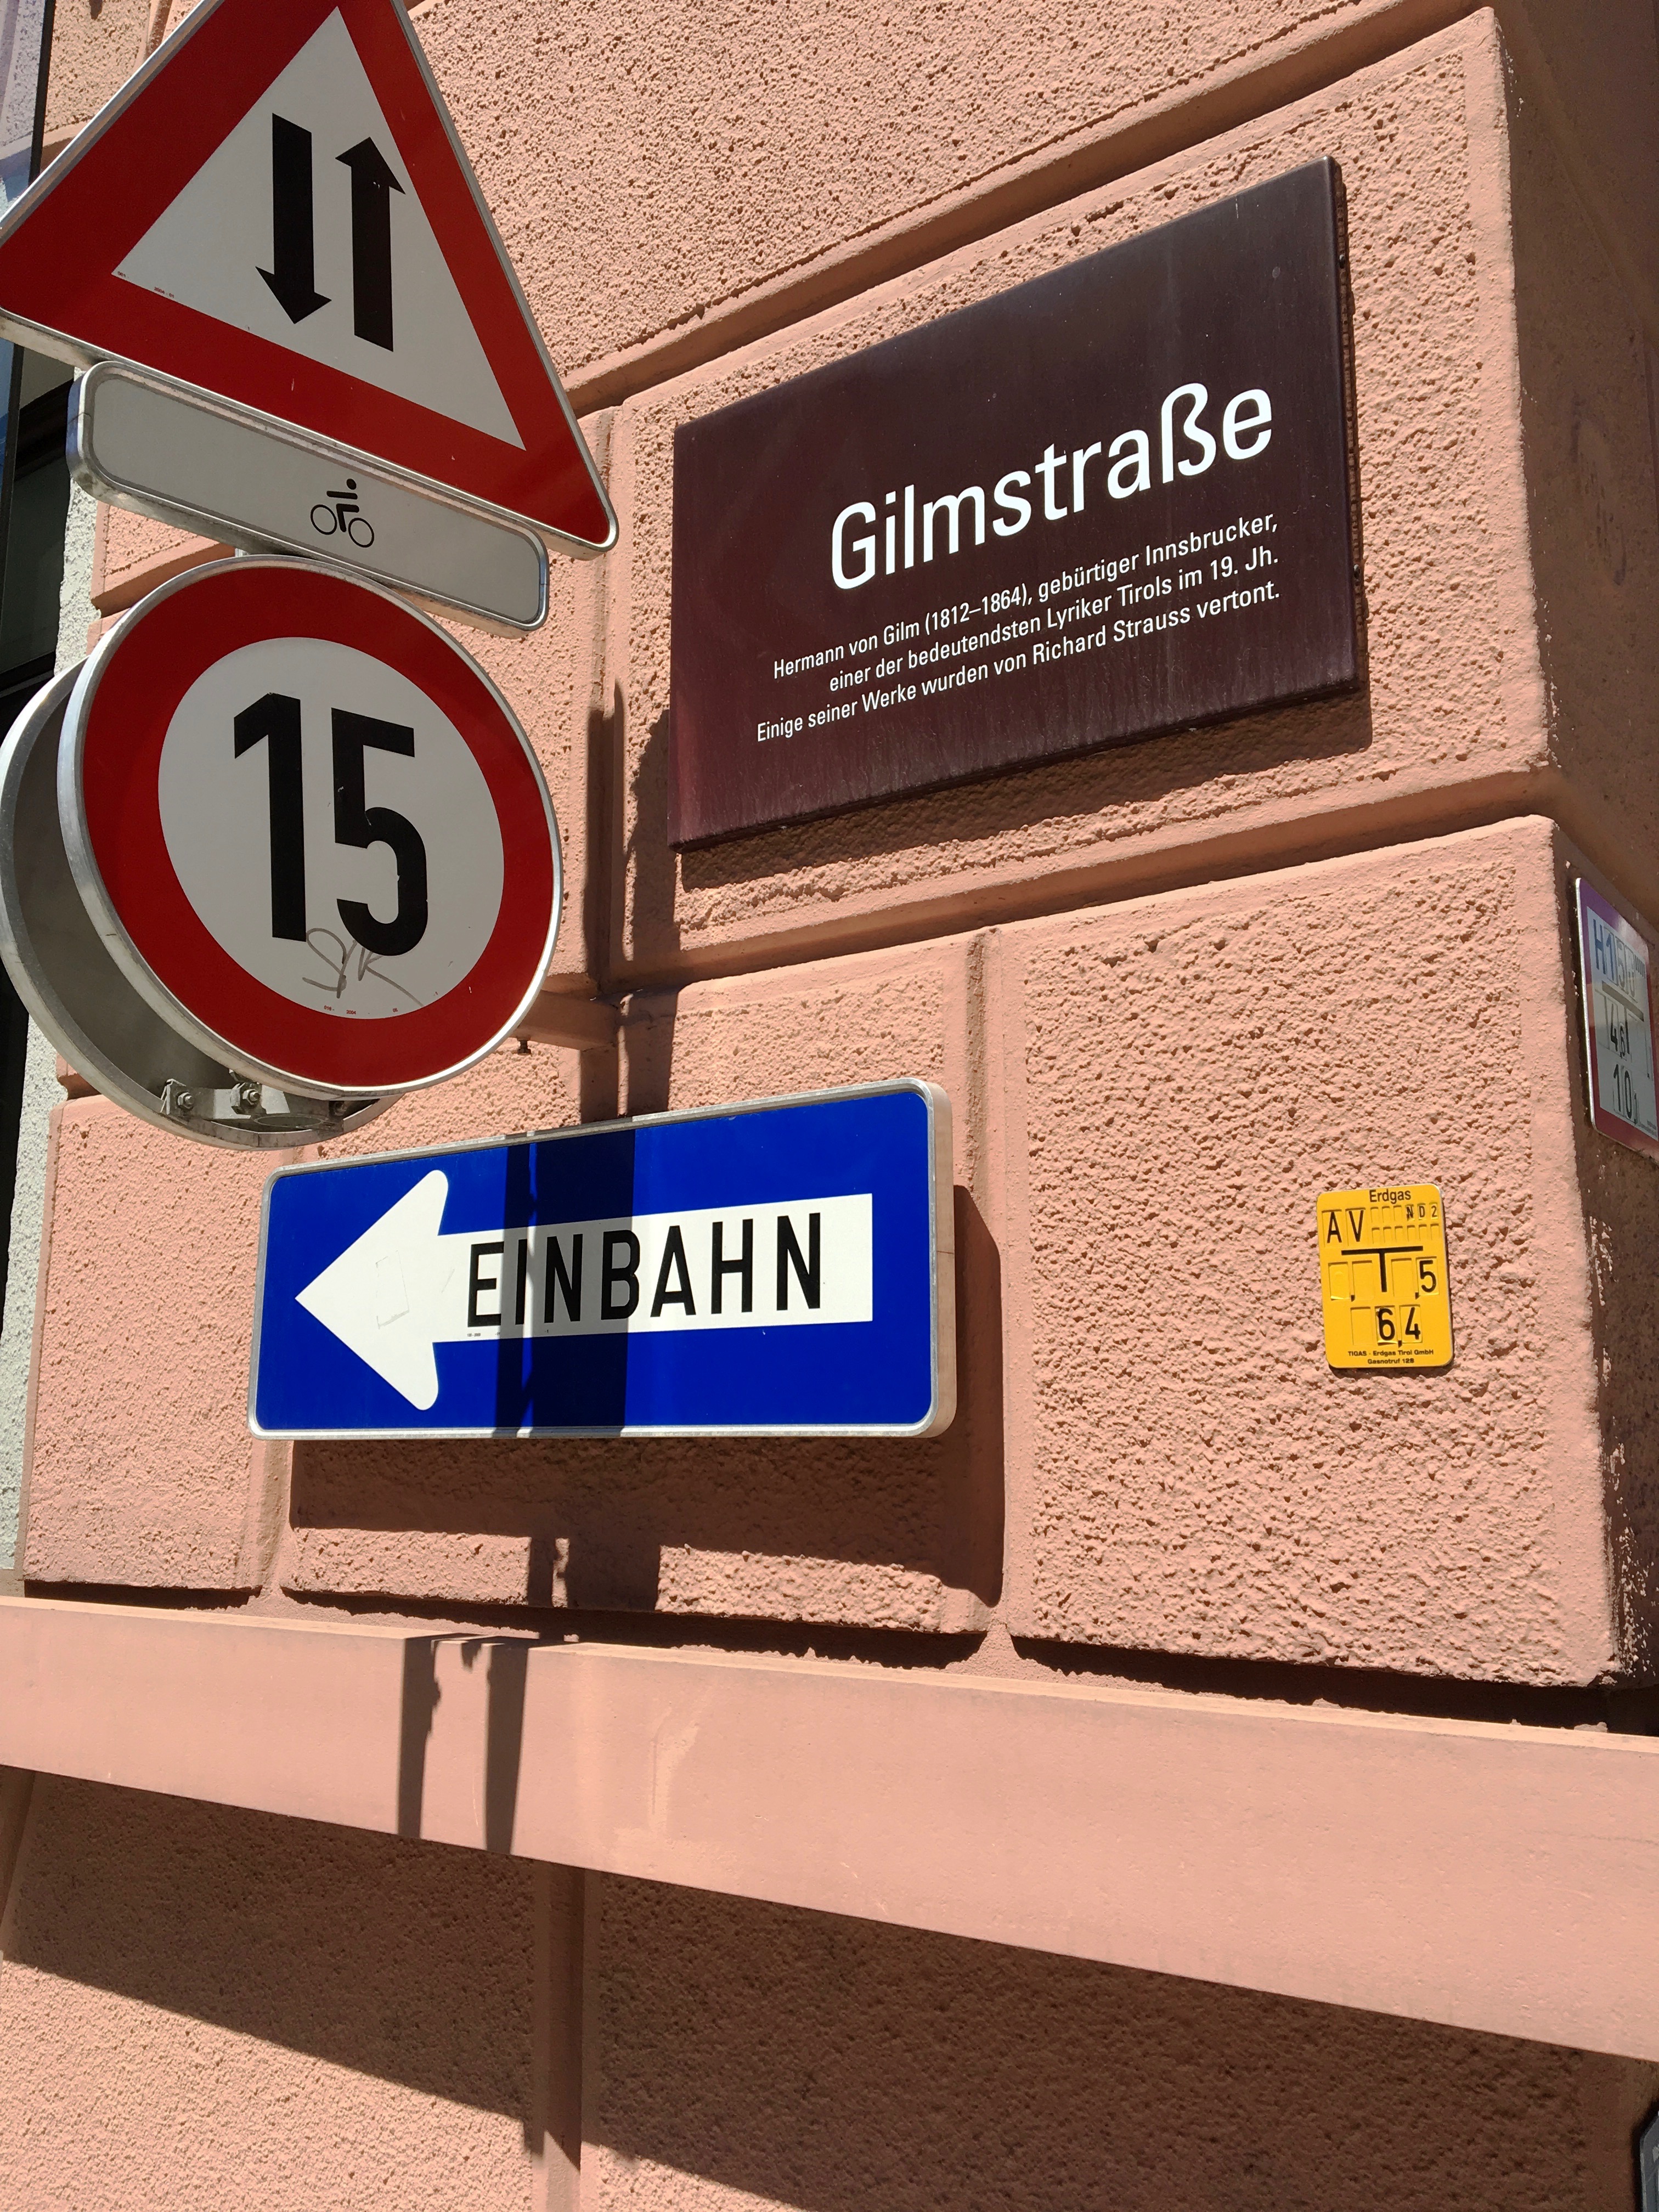 Gilmstraße, Innsbruck